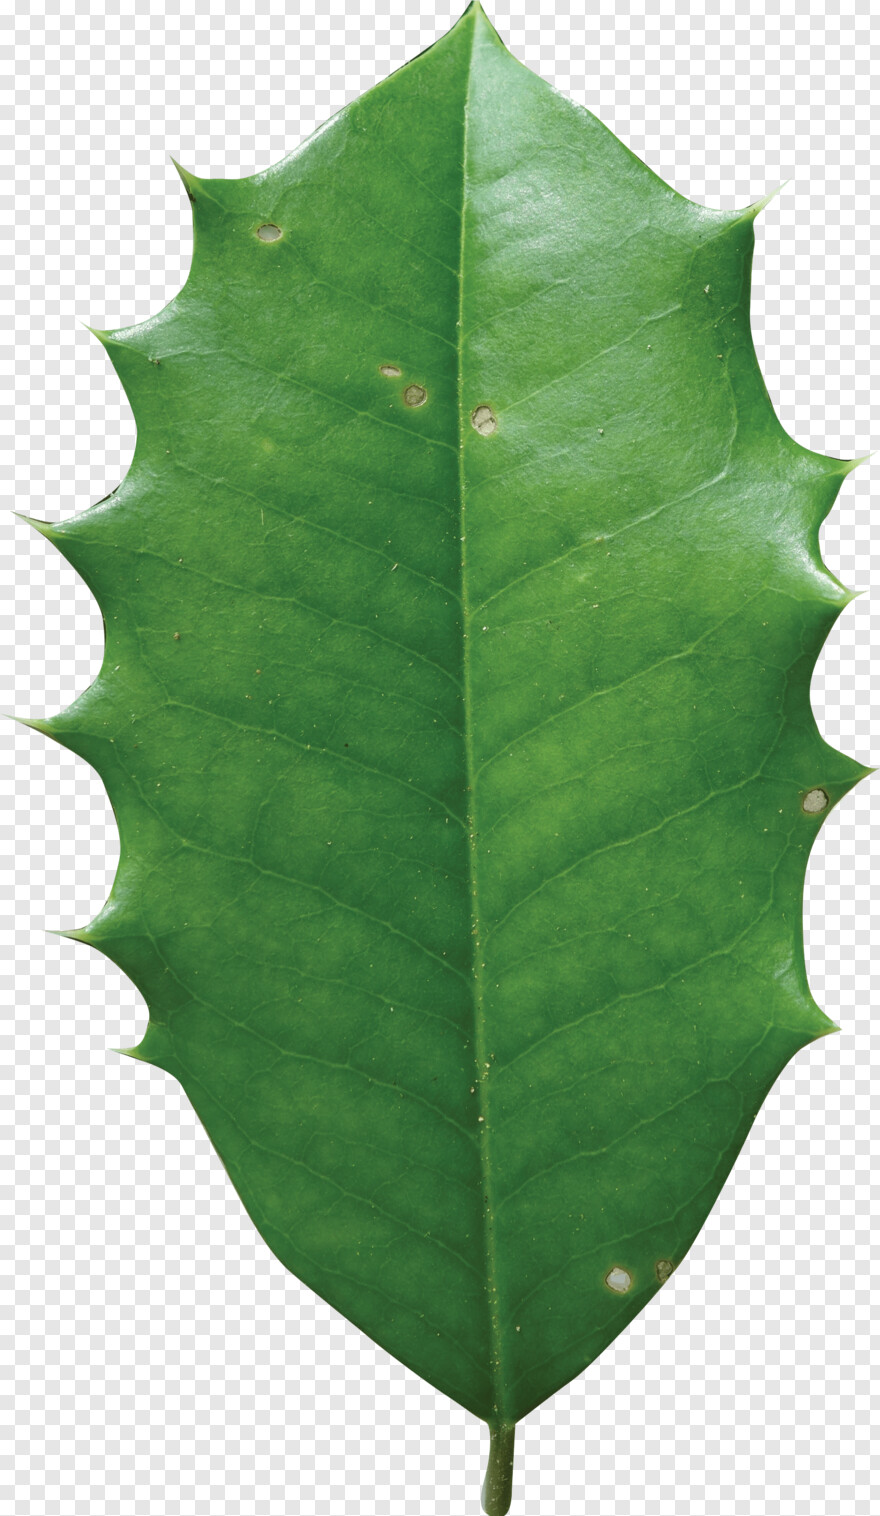 holly-leaf # 761267